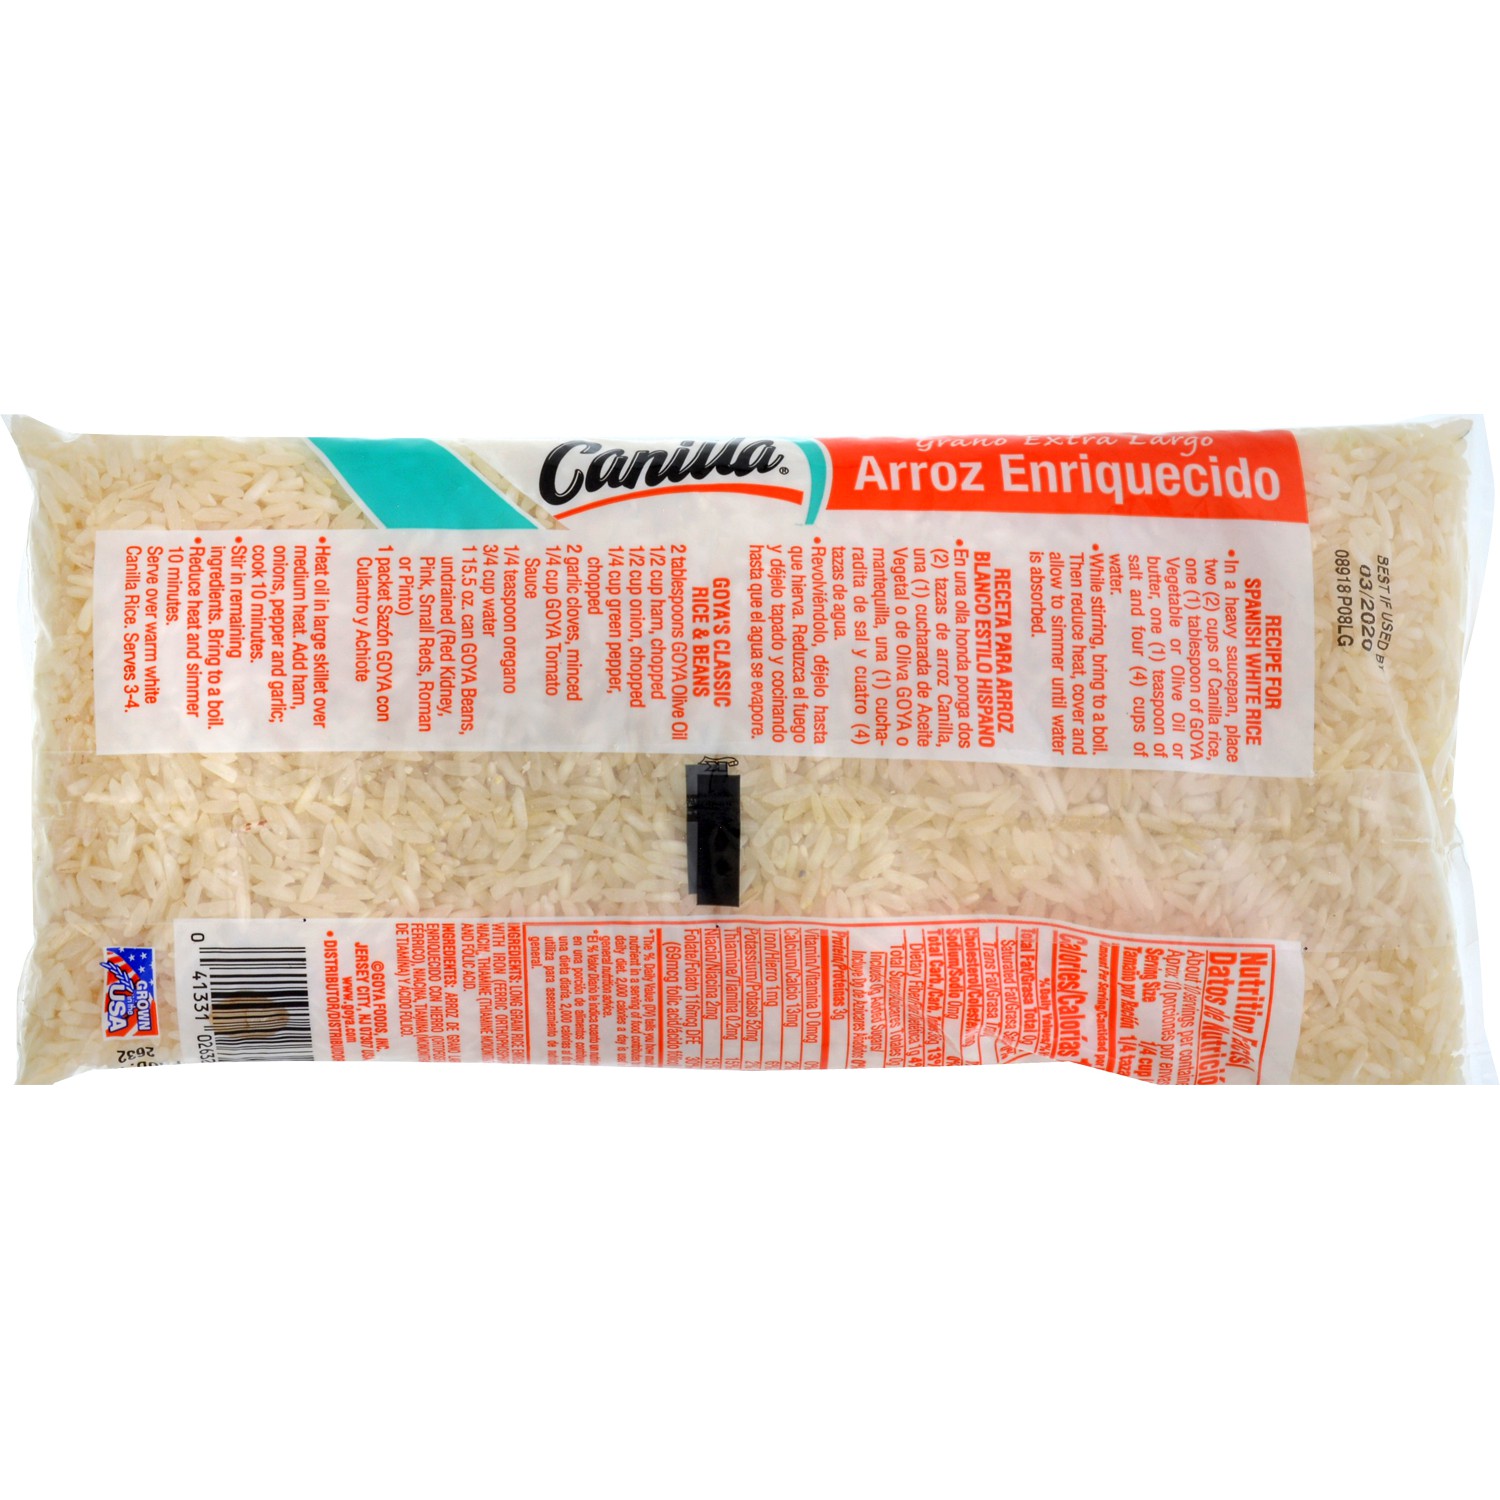 CANILLA® Extra Long Grain Rice